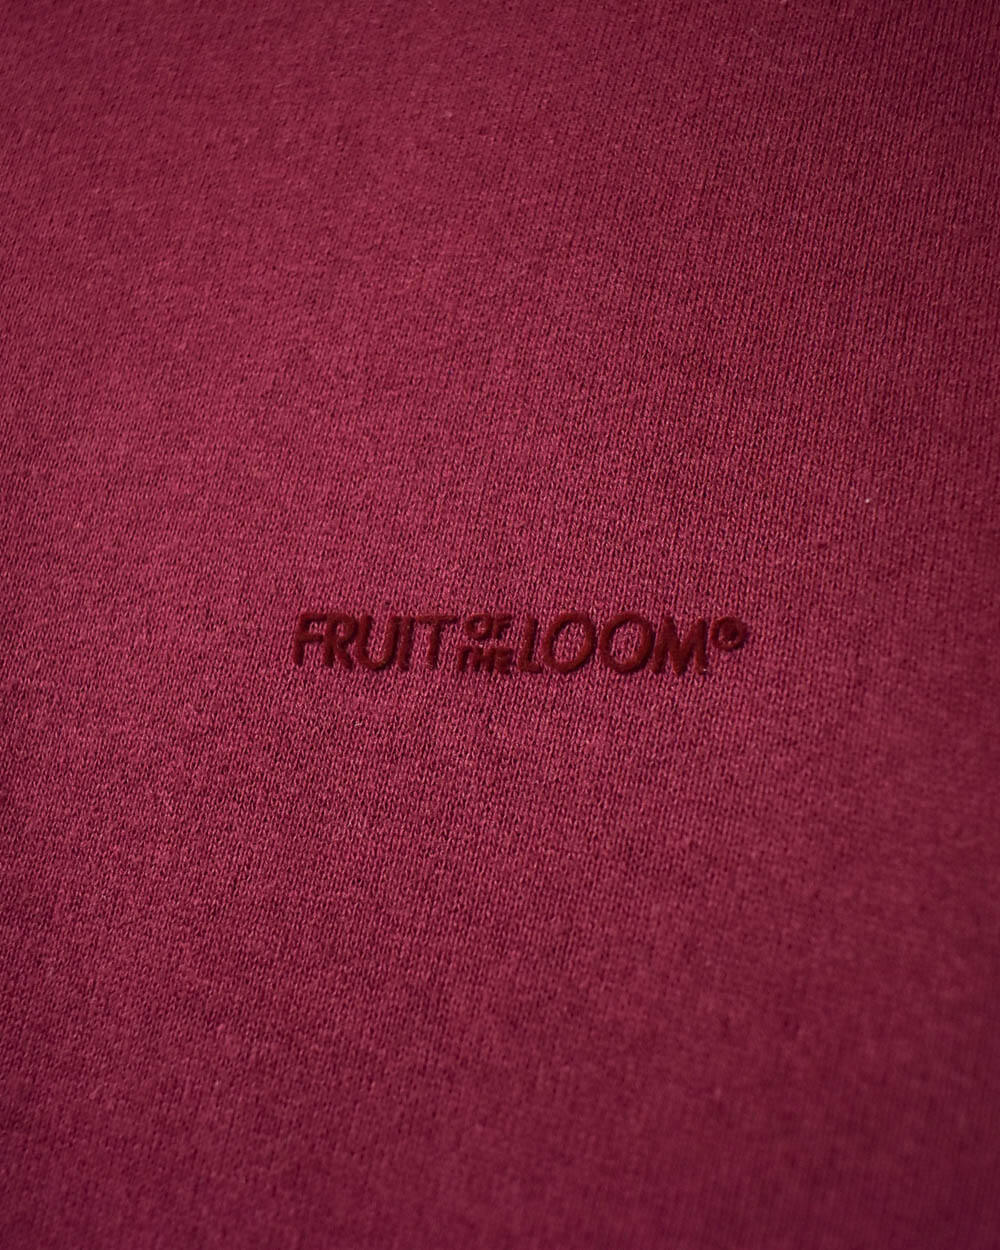 Maroon Fruit of The Loom Hoodie - Medium